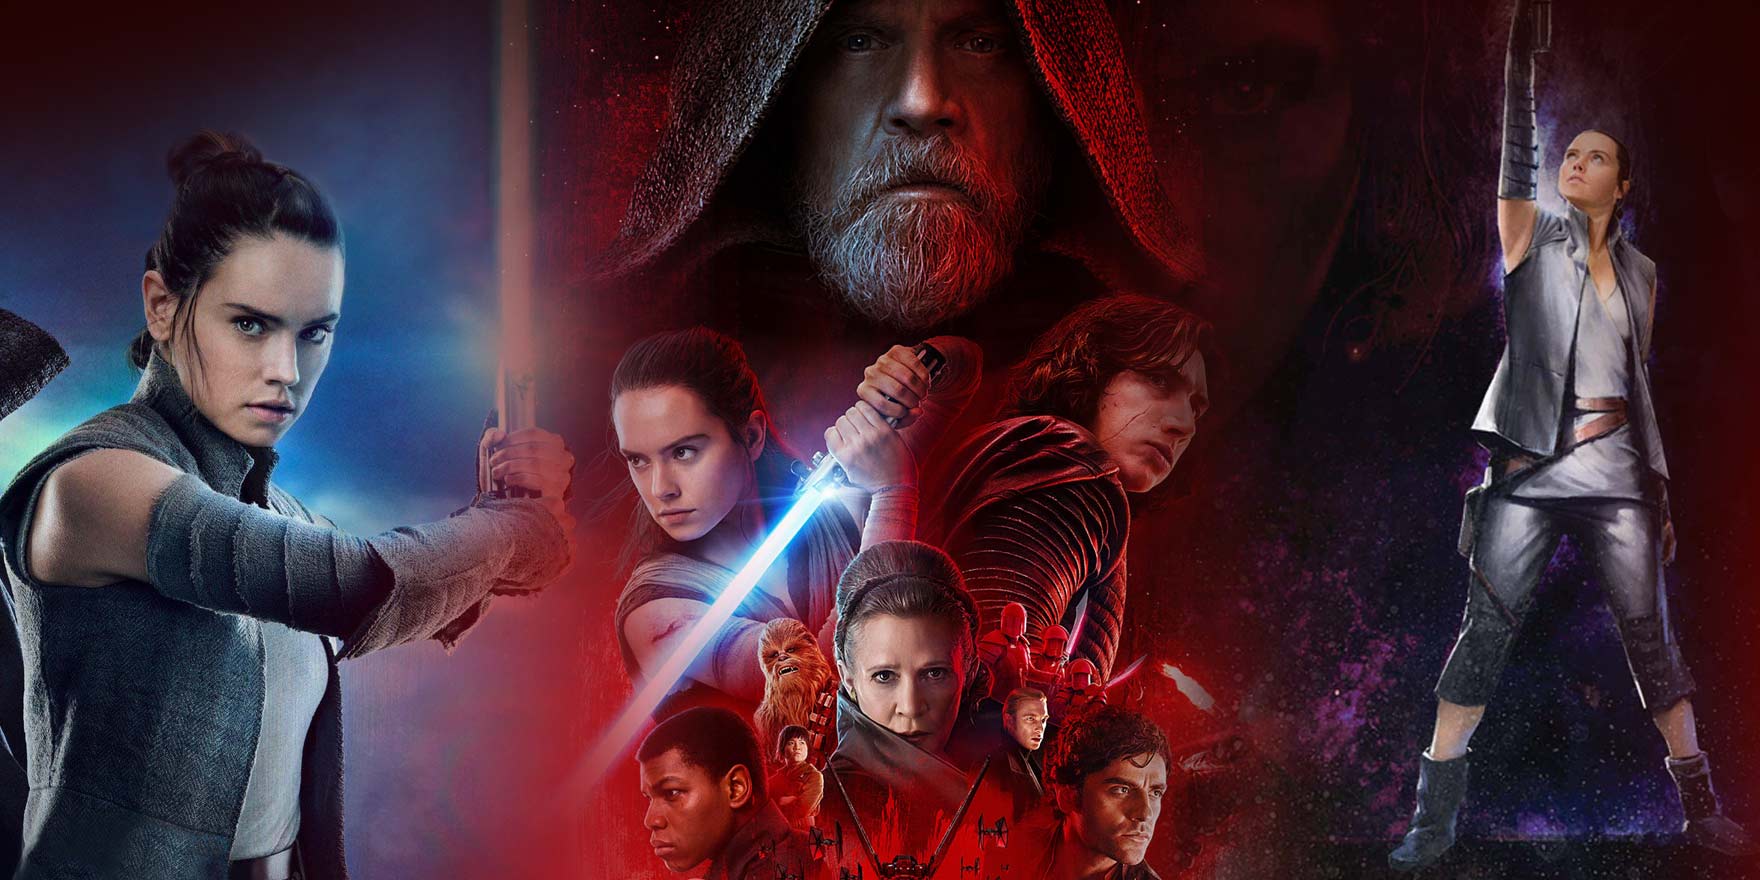 Star Wars – Les Derniers Jedi - Header Image